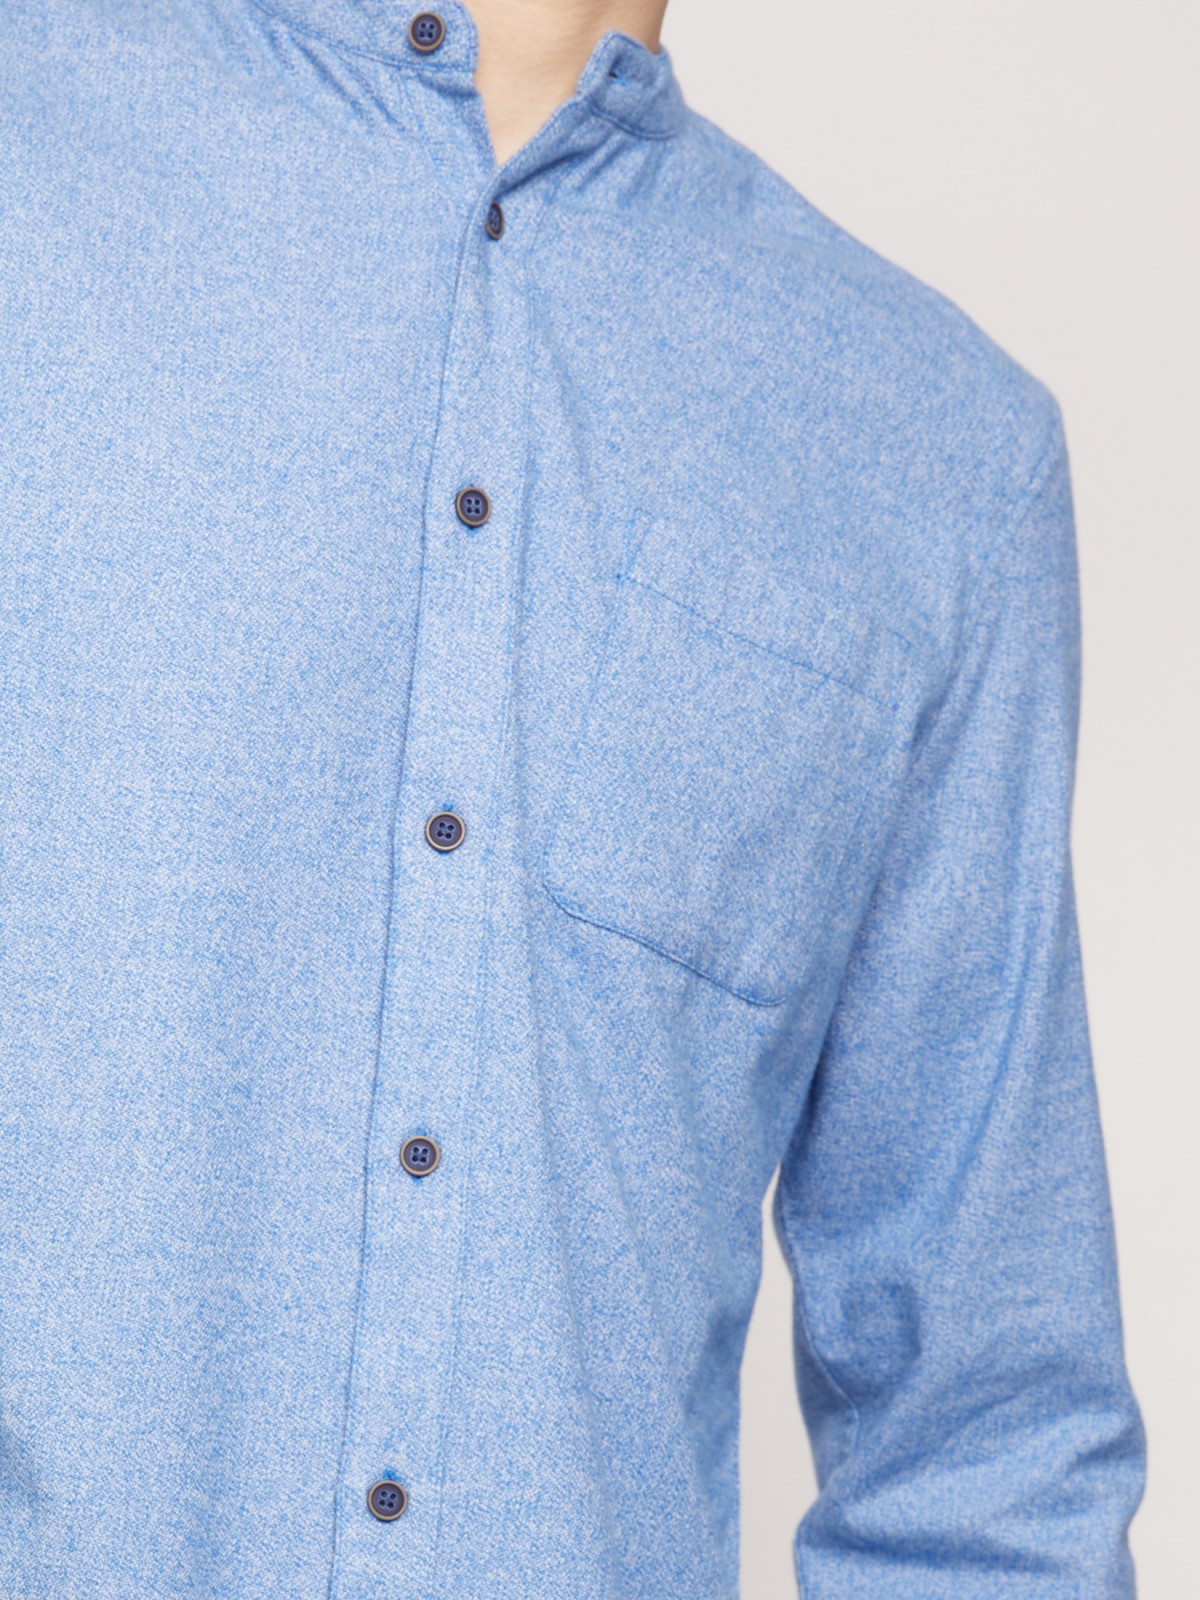 Фланелевая рубашка с воротником-стойкой zolla 211342191021, цвет голубой, размер S - фото 6